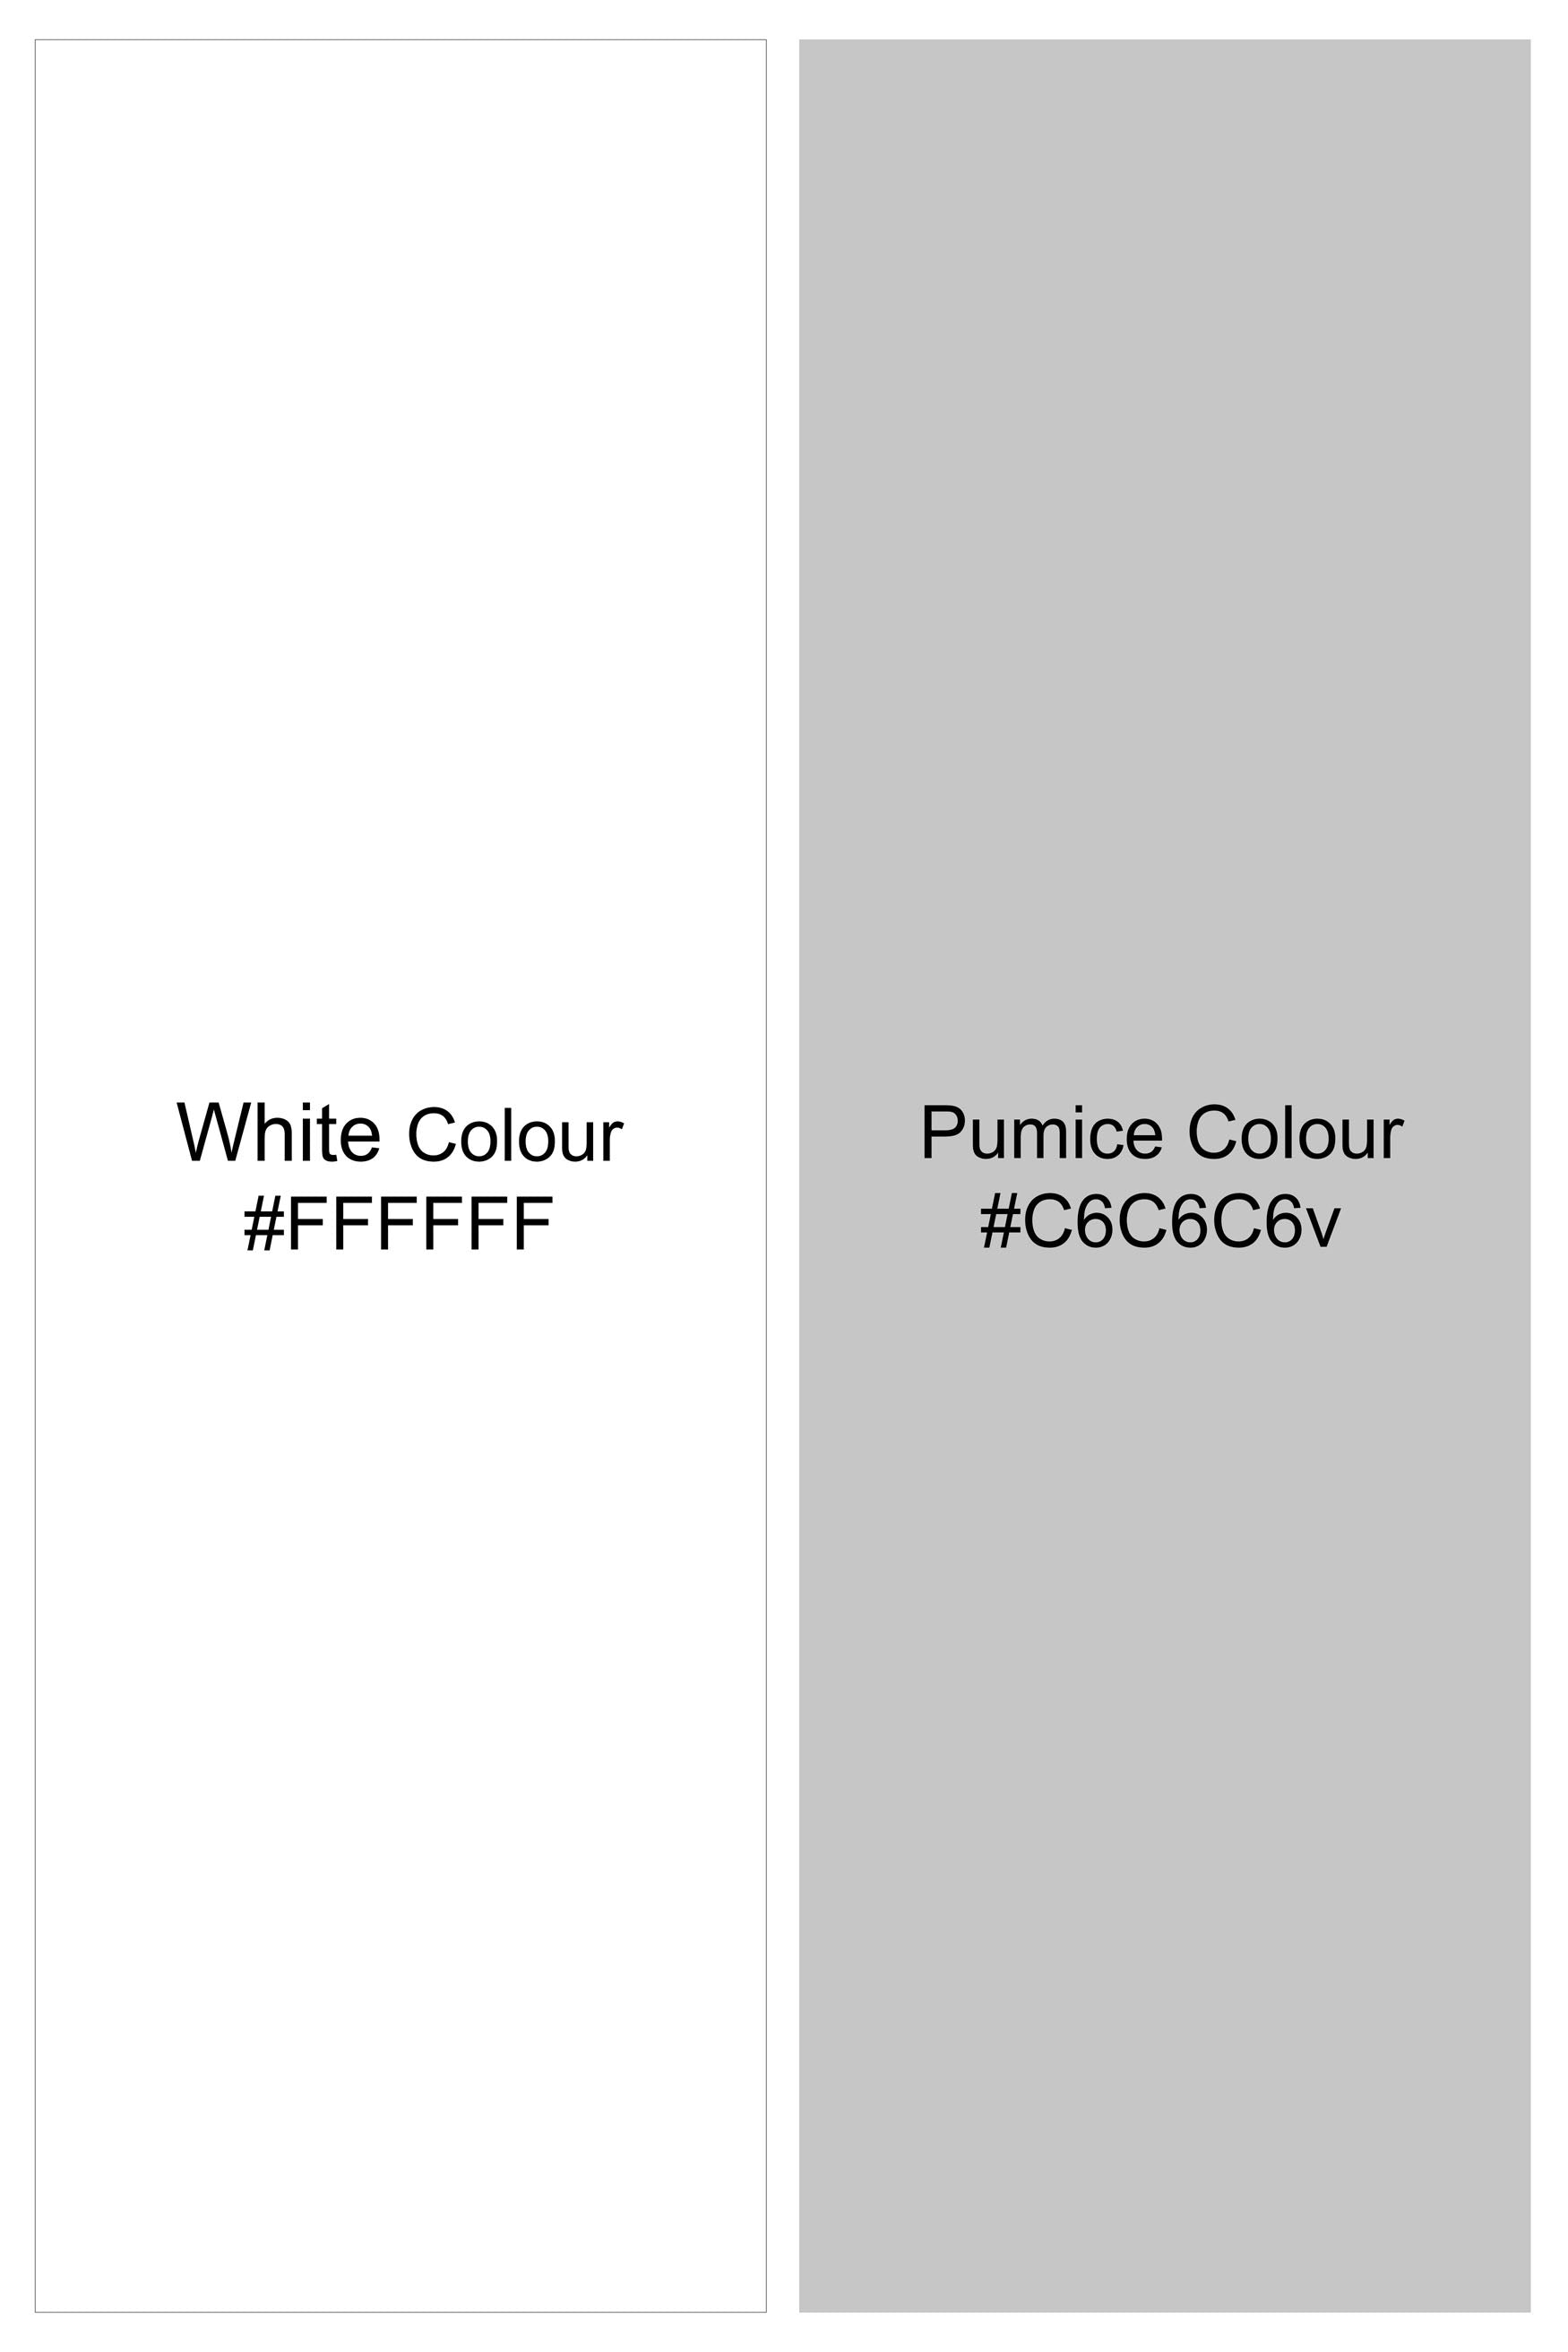 Bright White with Pumice Gray Printed Subtle Sheen Super Soft Premium Cotton Shorts SR355-28,  SR355-30,  SR355-32,  SR355-34,  SR355-36,  SR355-38,  SR355-40,  SR355-42,  SR355-44